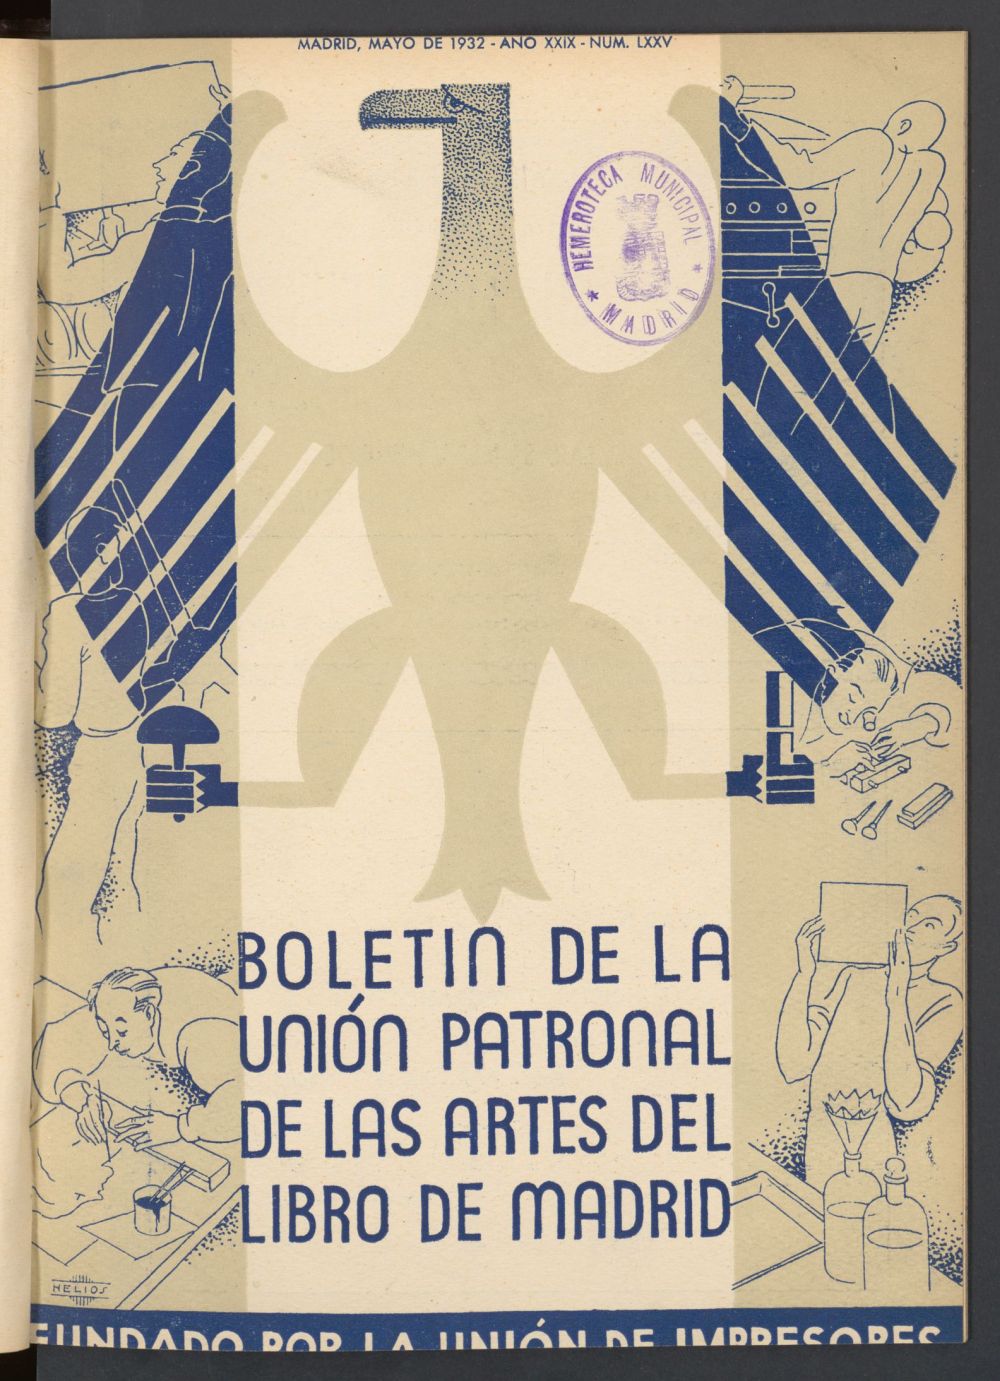 Boletn de la unin de impresores : rgano de la unin patronal de las artes del libro de mayo de 1932